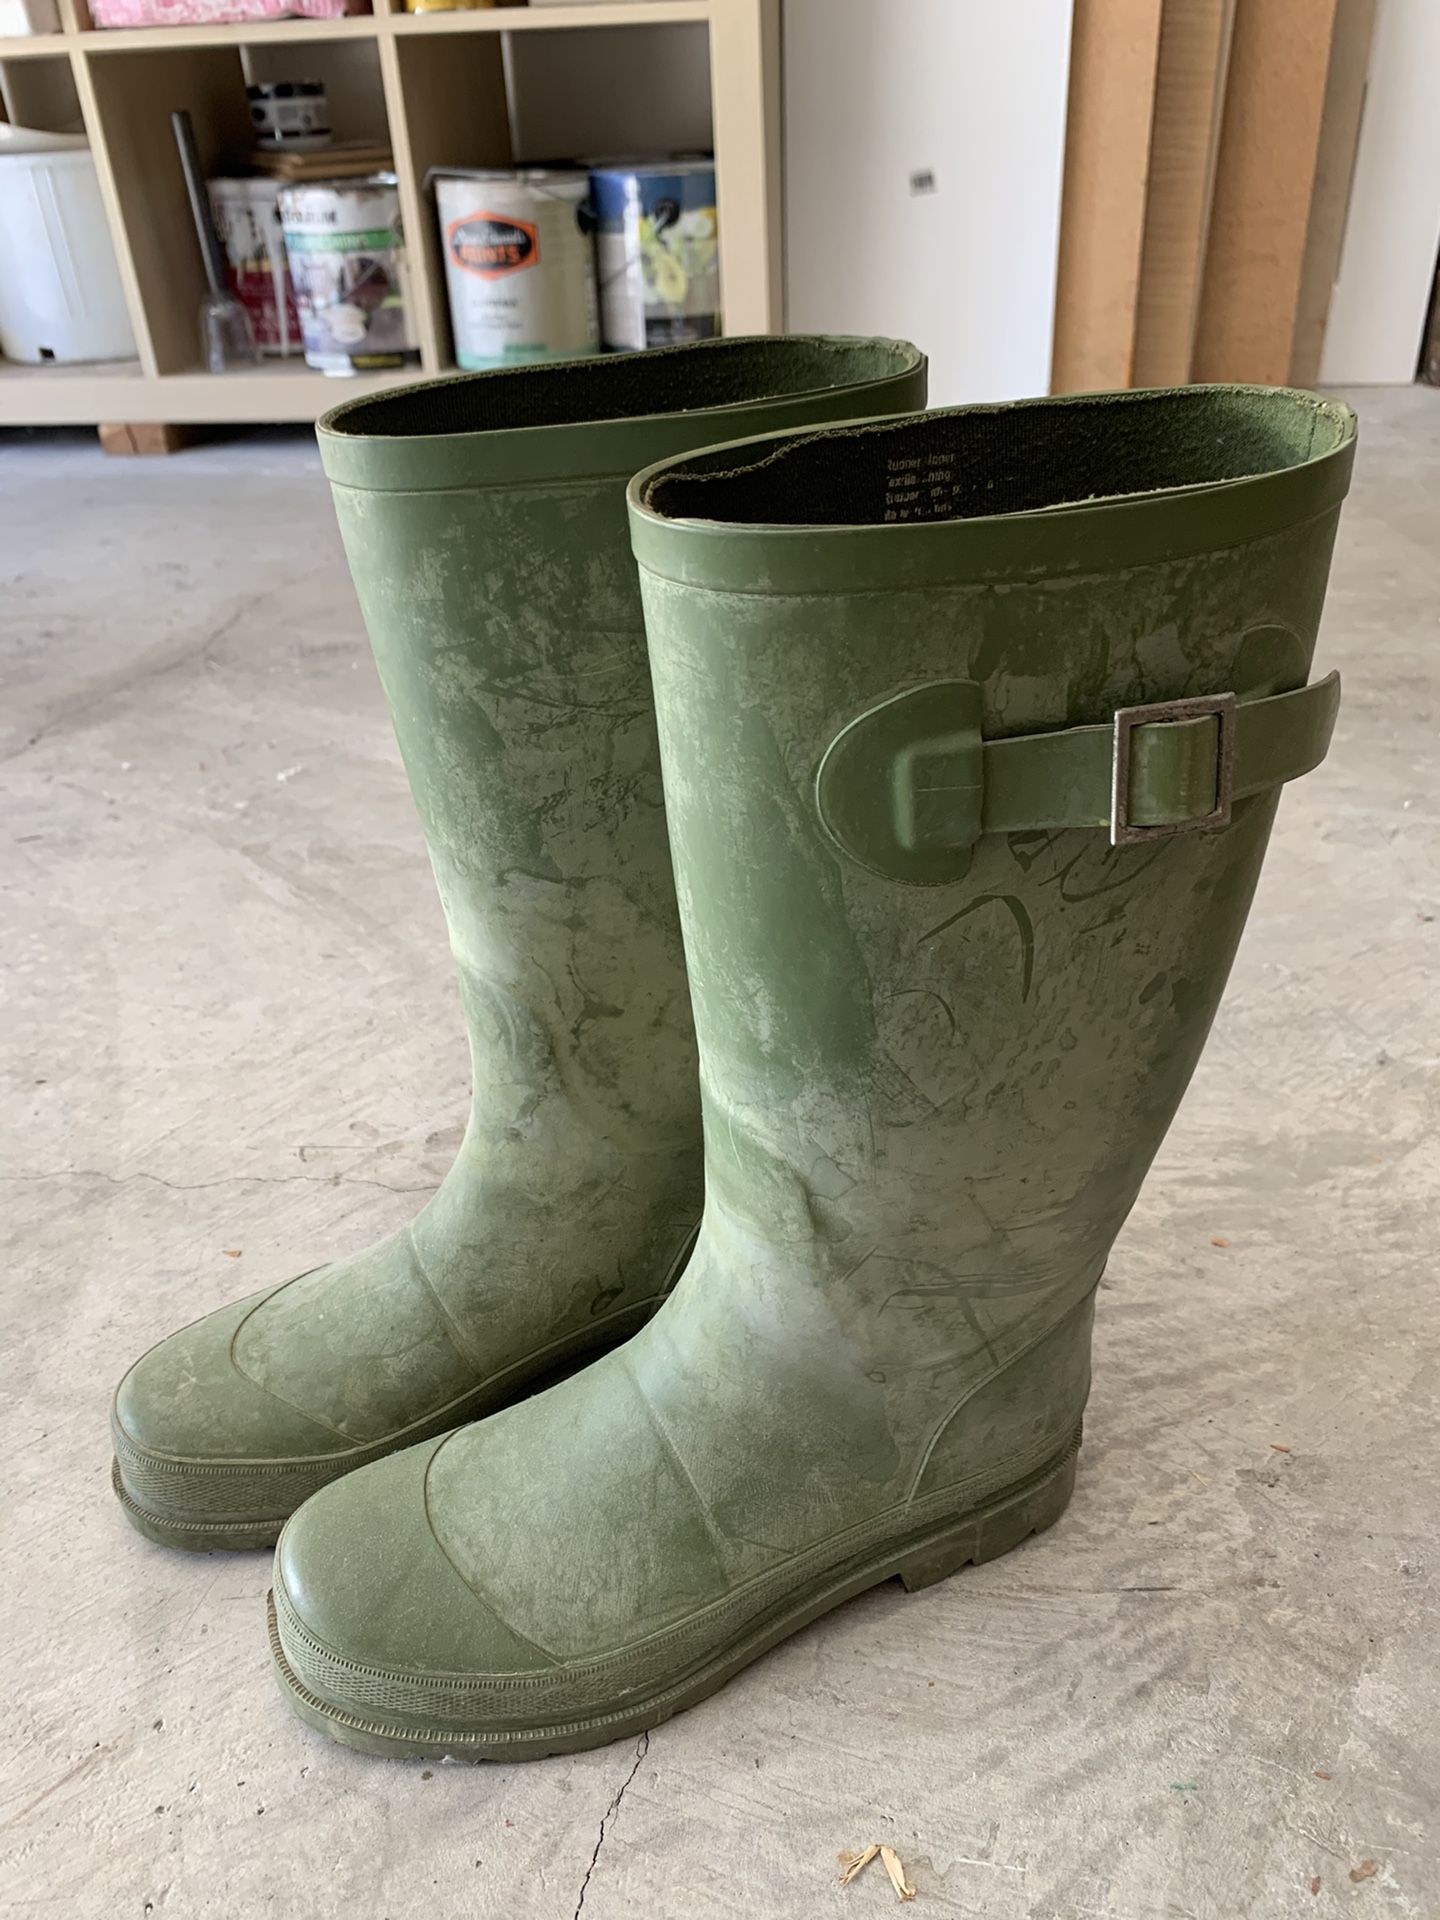 Smith & Hawken Green Garden Rain Boots Size 6/6.5/7